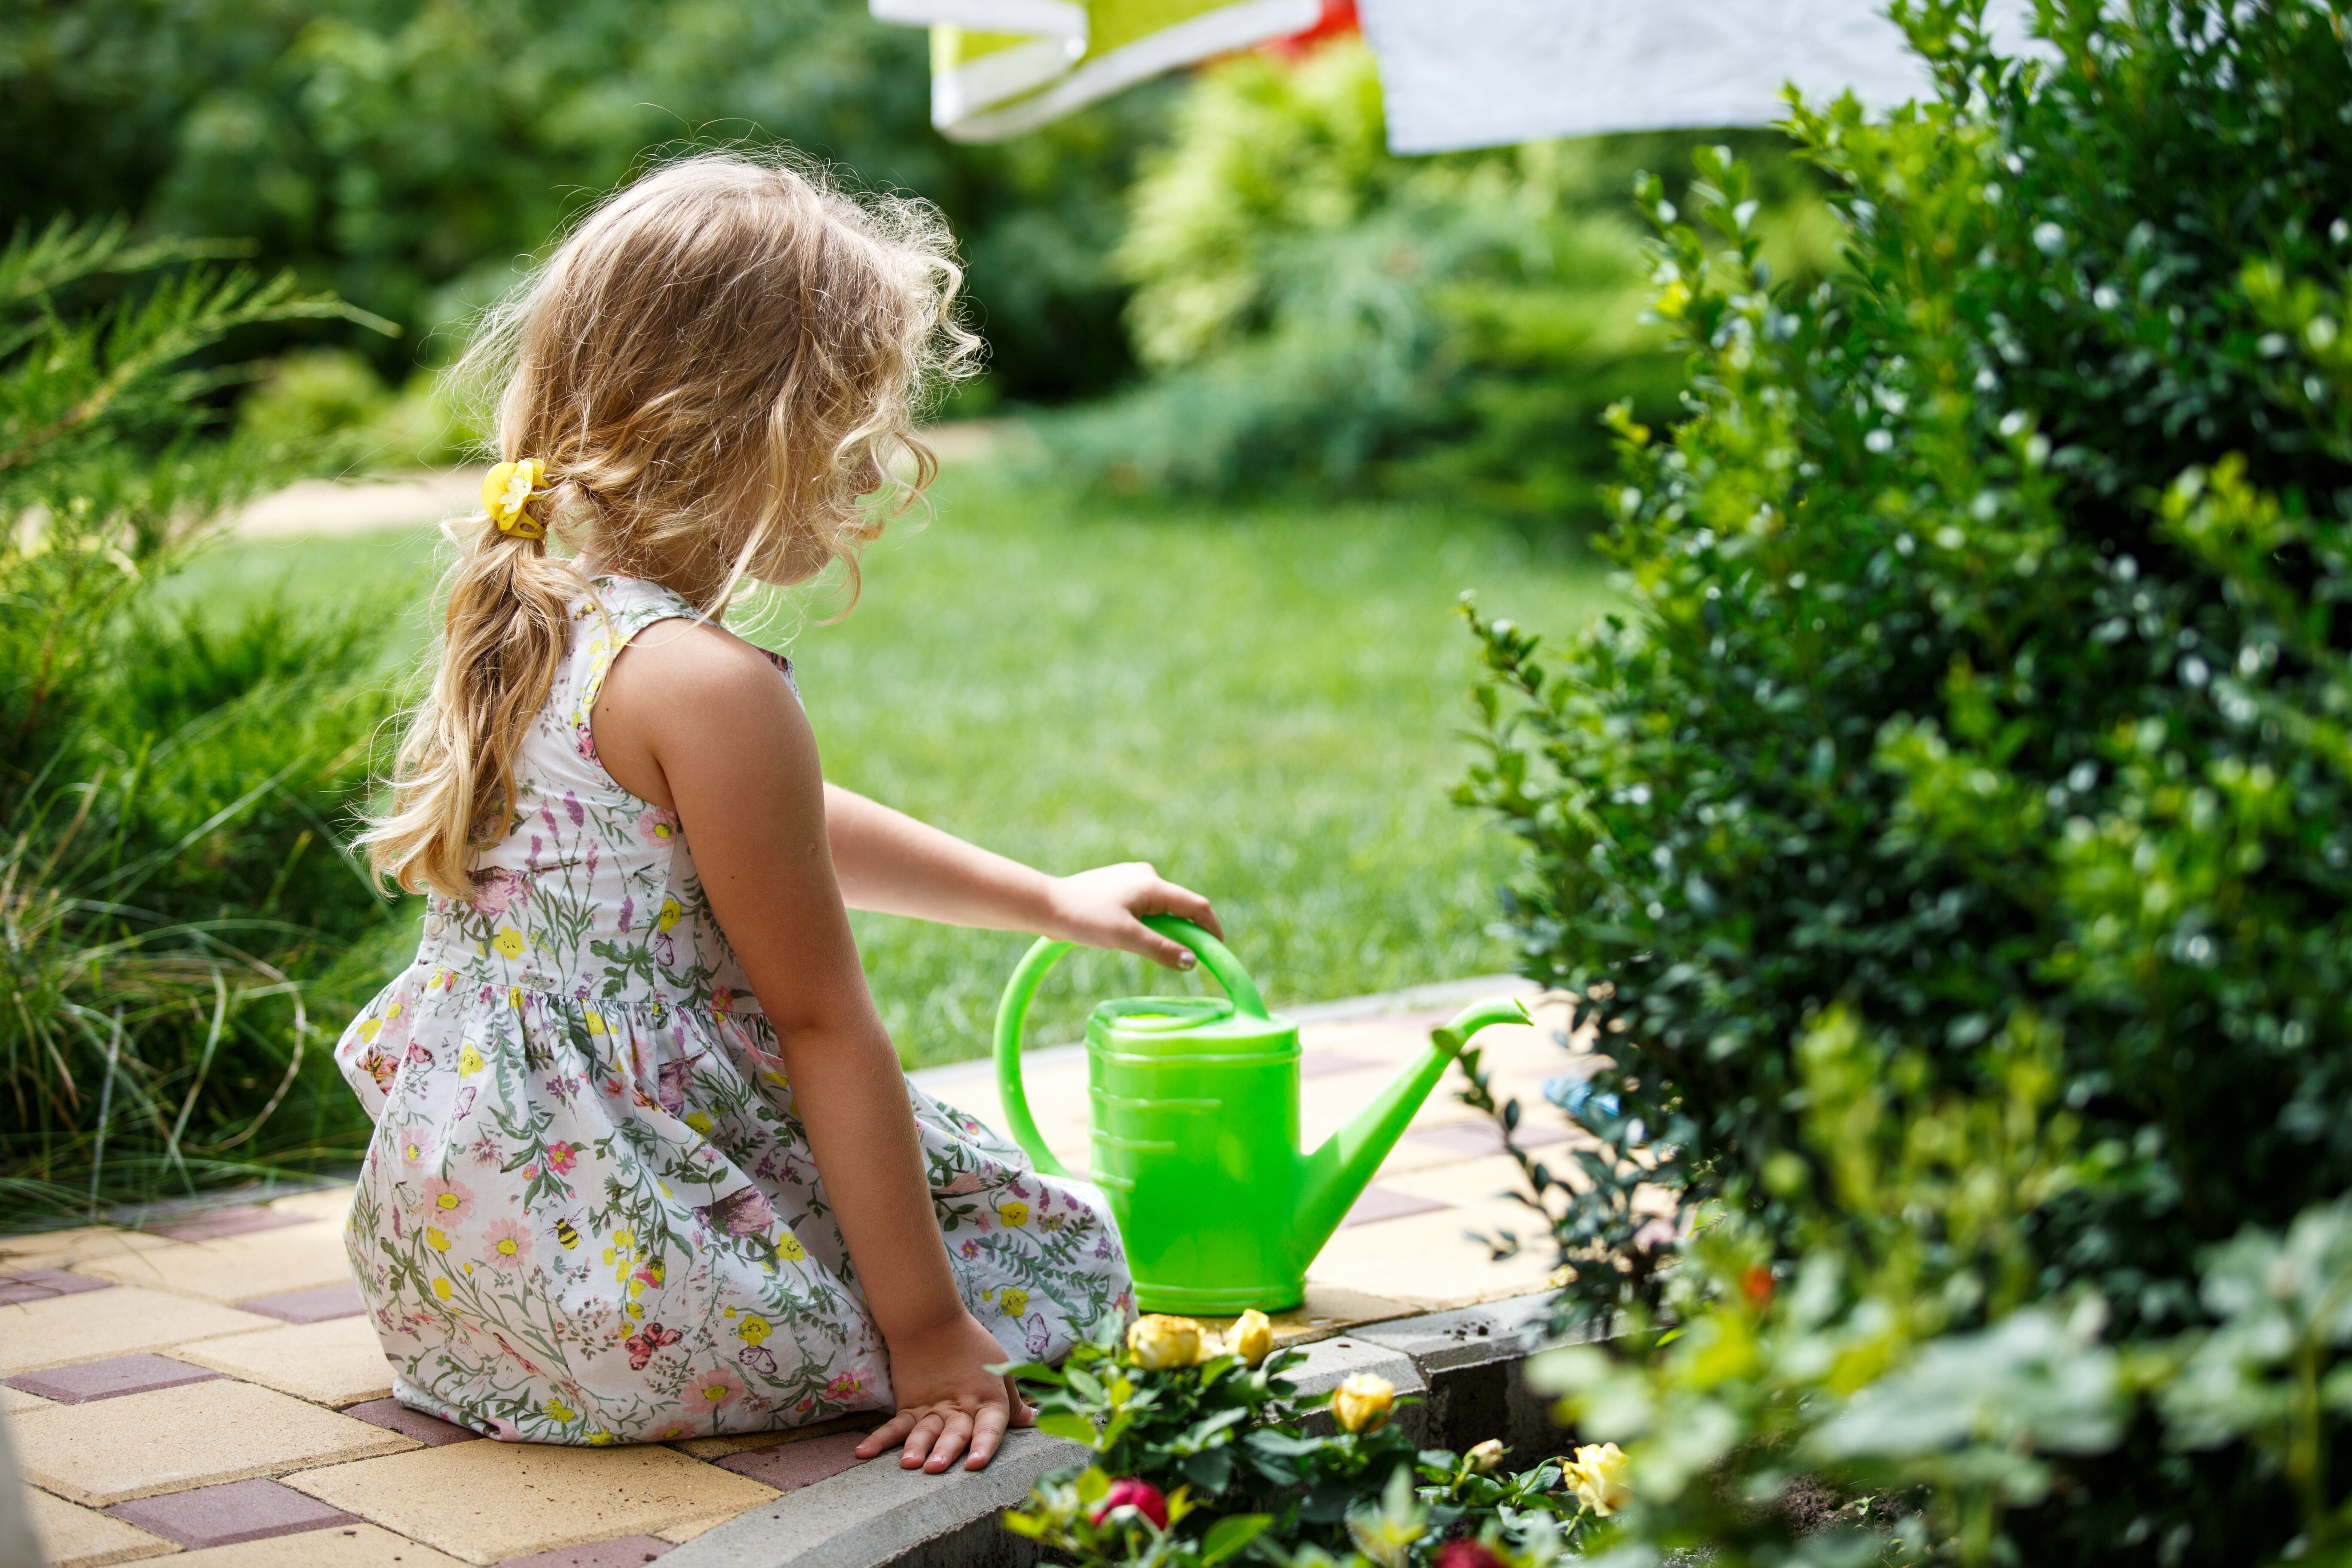 Verlichting Afwijken suiker 8 tips voor een kindvriendelijke tuin - Pokon - Groen doet je goed